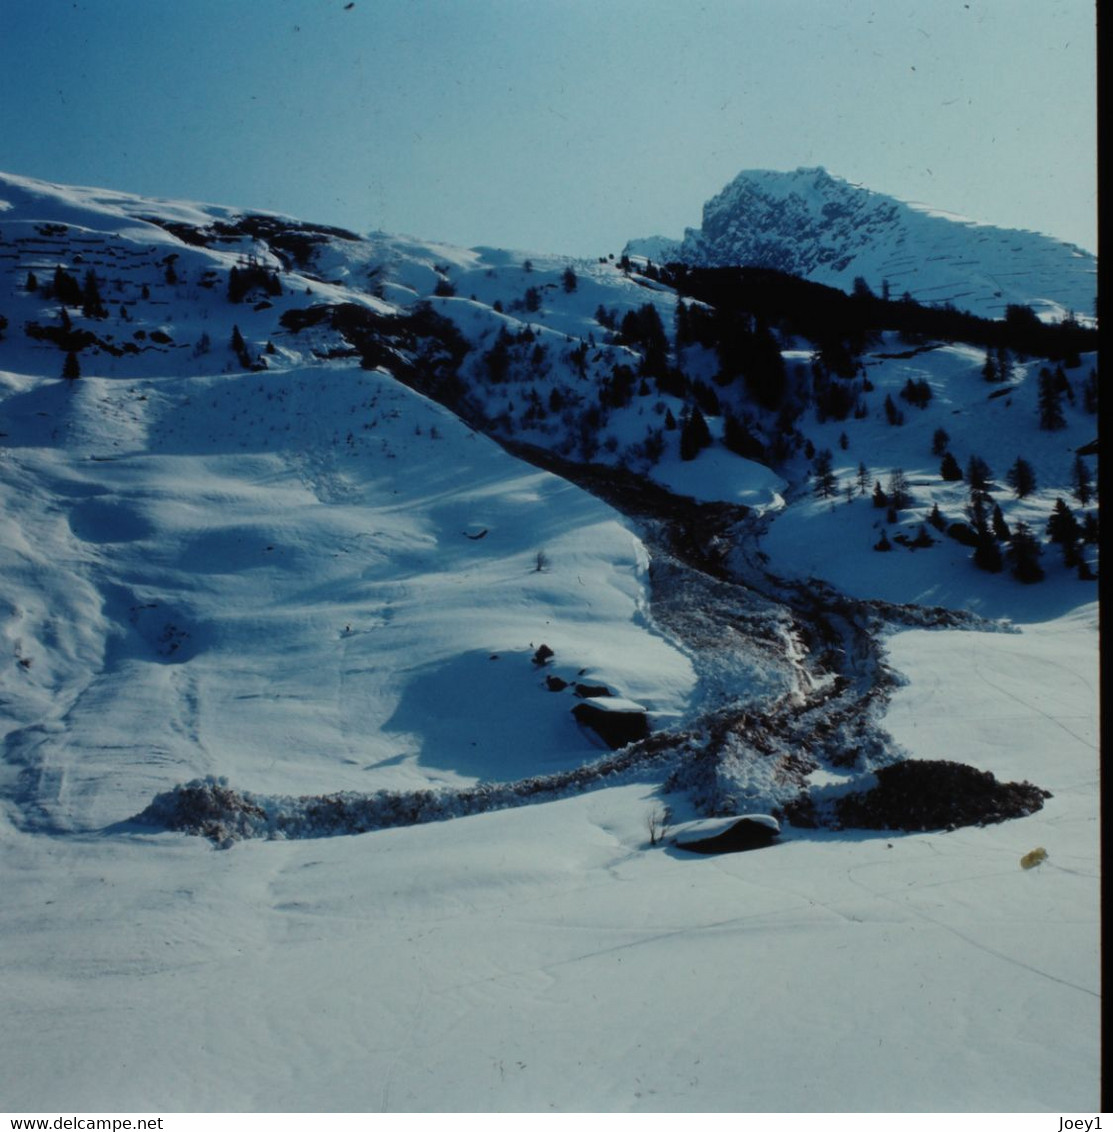 Photos André Roch Alpiniste Spécialiste Des Avalanches,18 Ekta Originaux 6/6,Davos Et Autres 1968,1970 - Diapositives (slides)